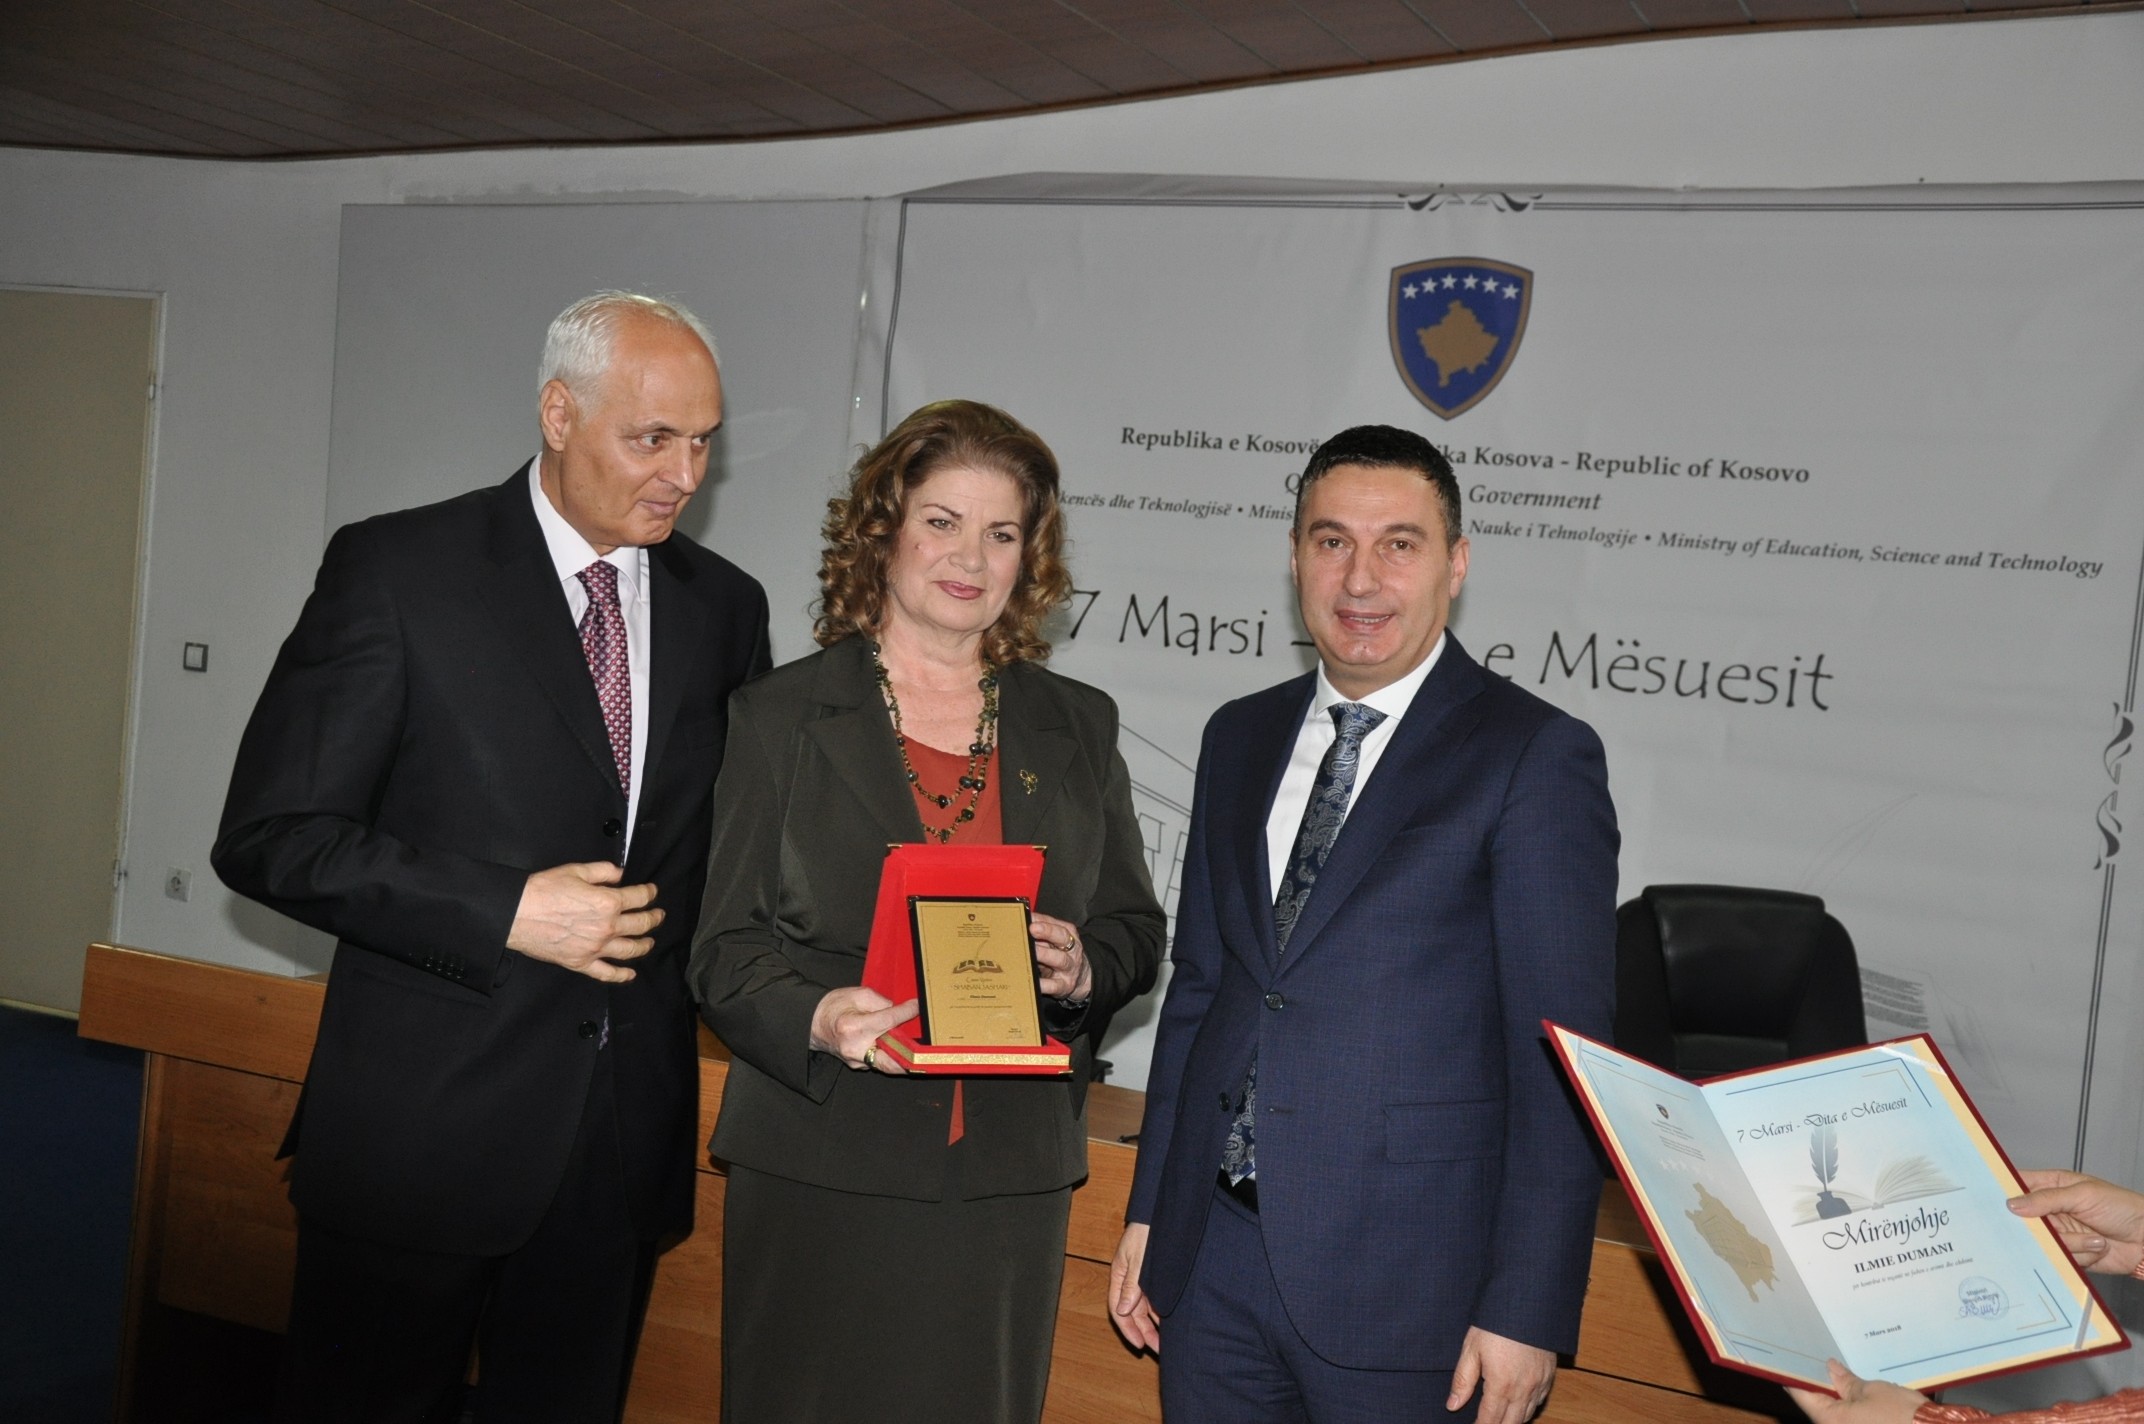  Në Ditën e Mësuesit, ministri Bytyqi ndau çmimin “Shaban Jashari”